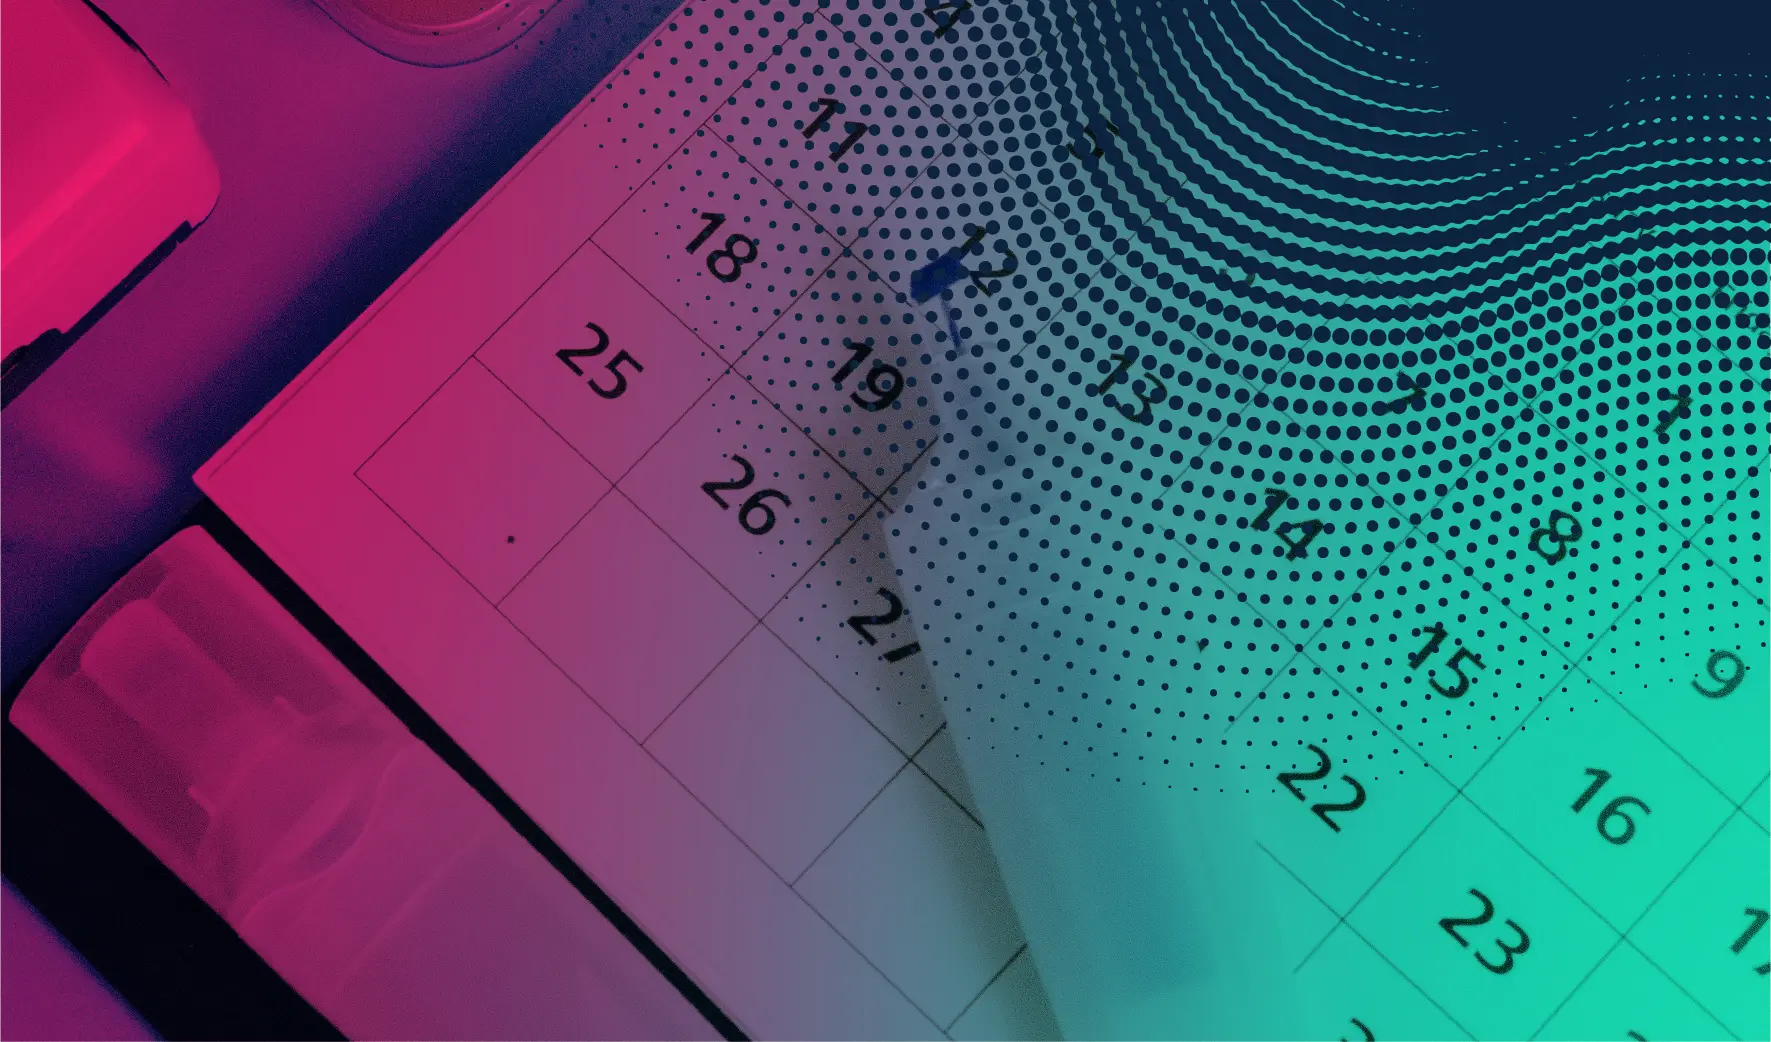 a flipped calendar showing 2 months